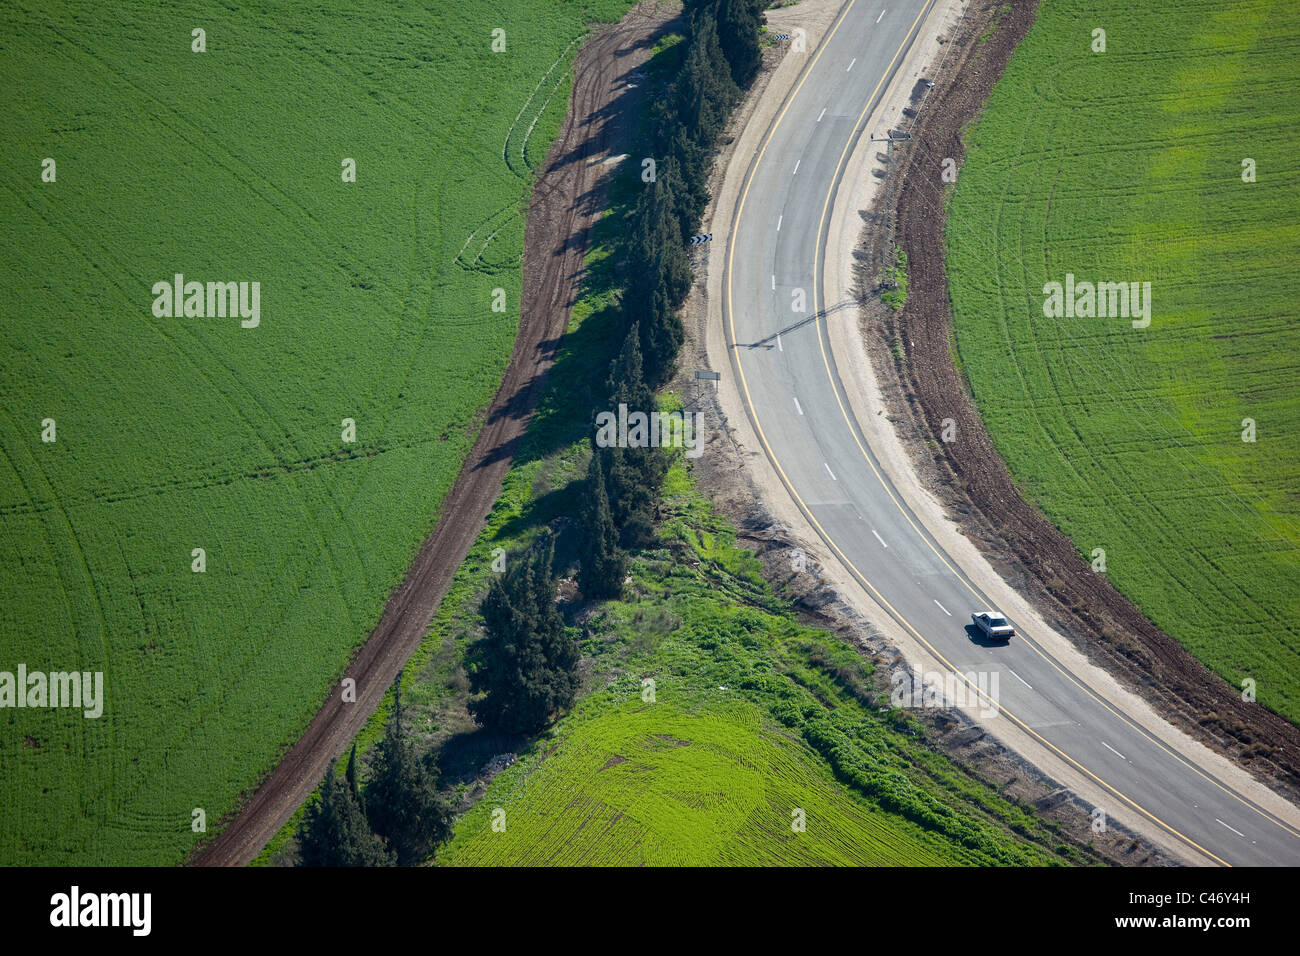 Vista astratta dell'agricoltura campi della Galilea Foto Stock